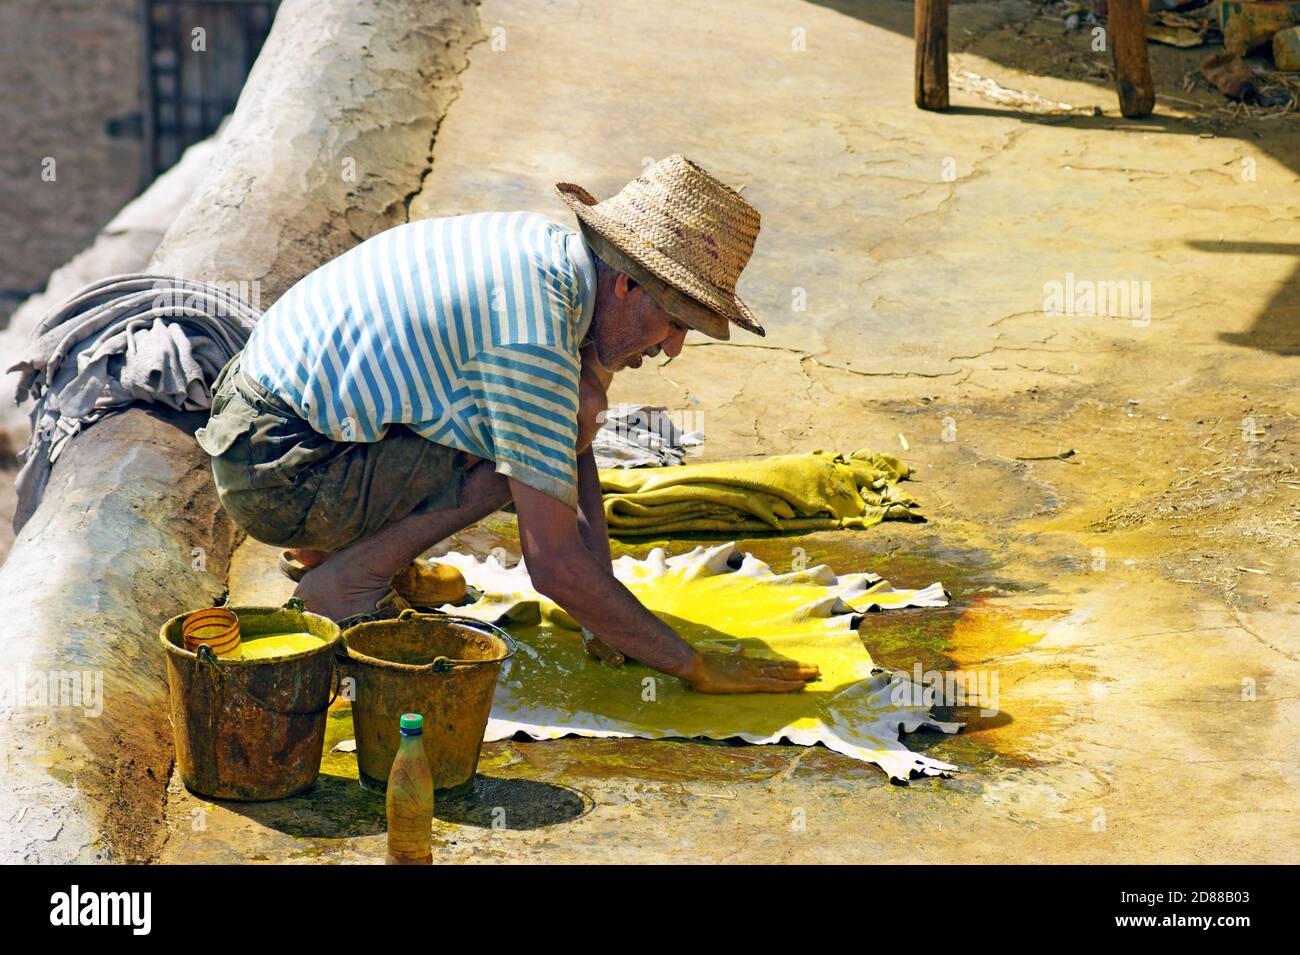 Ein alter marokkanischer Mann färbt Rawhide eine leuchtend gelbe Farbe als Teil des Lederproduktionsprozesses in der Chouara Tannery in Fez, Marokko. Stockfoto